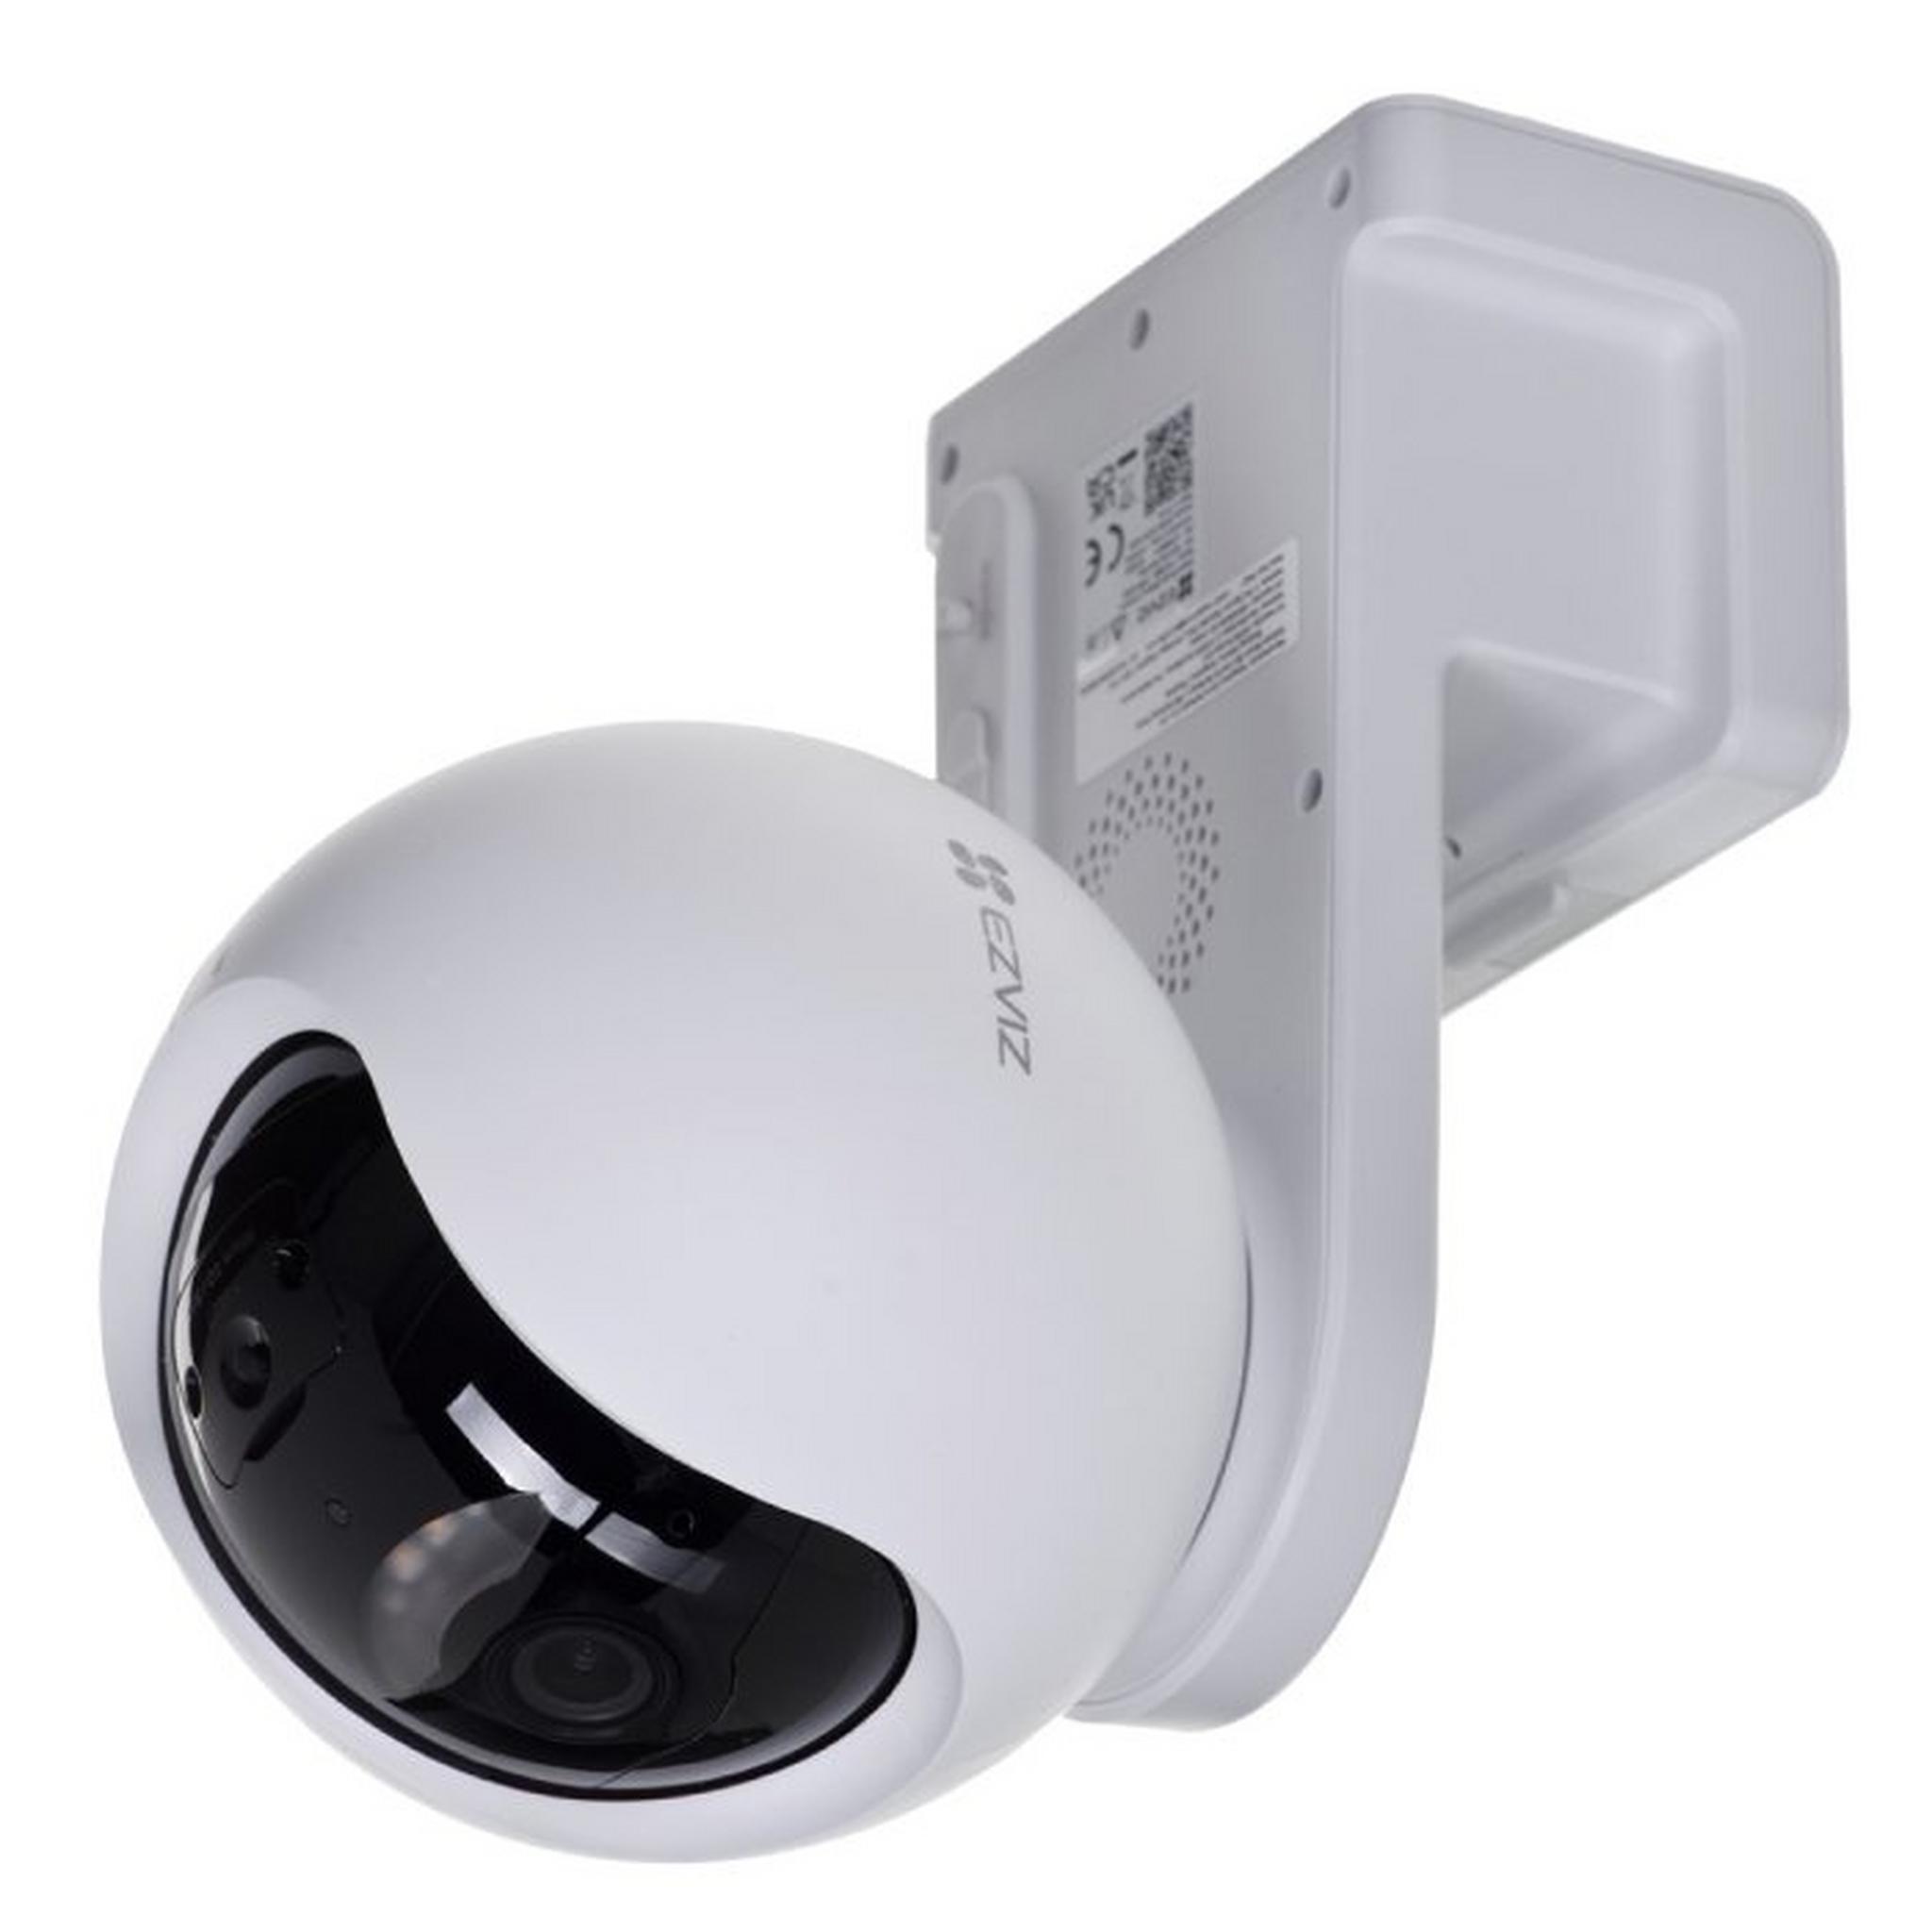 Ezviz EB8 Pan & Tilt Battery Camera, 4G Connectivity, 2K Resolution - White